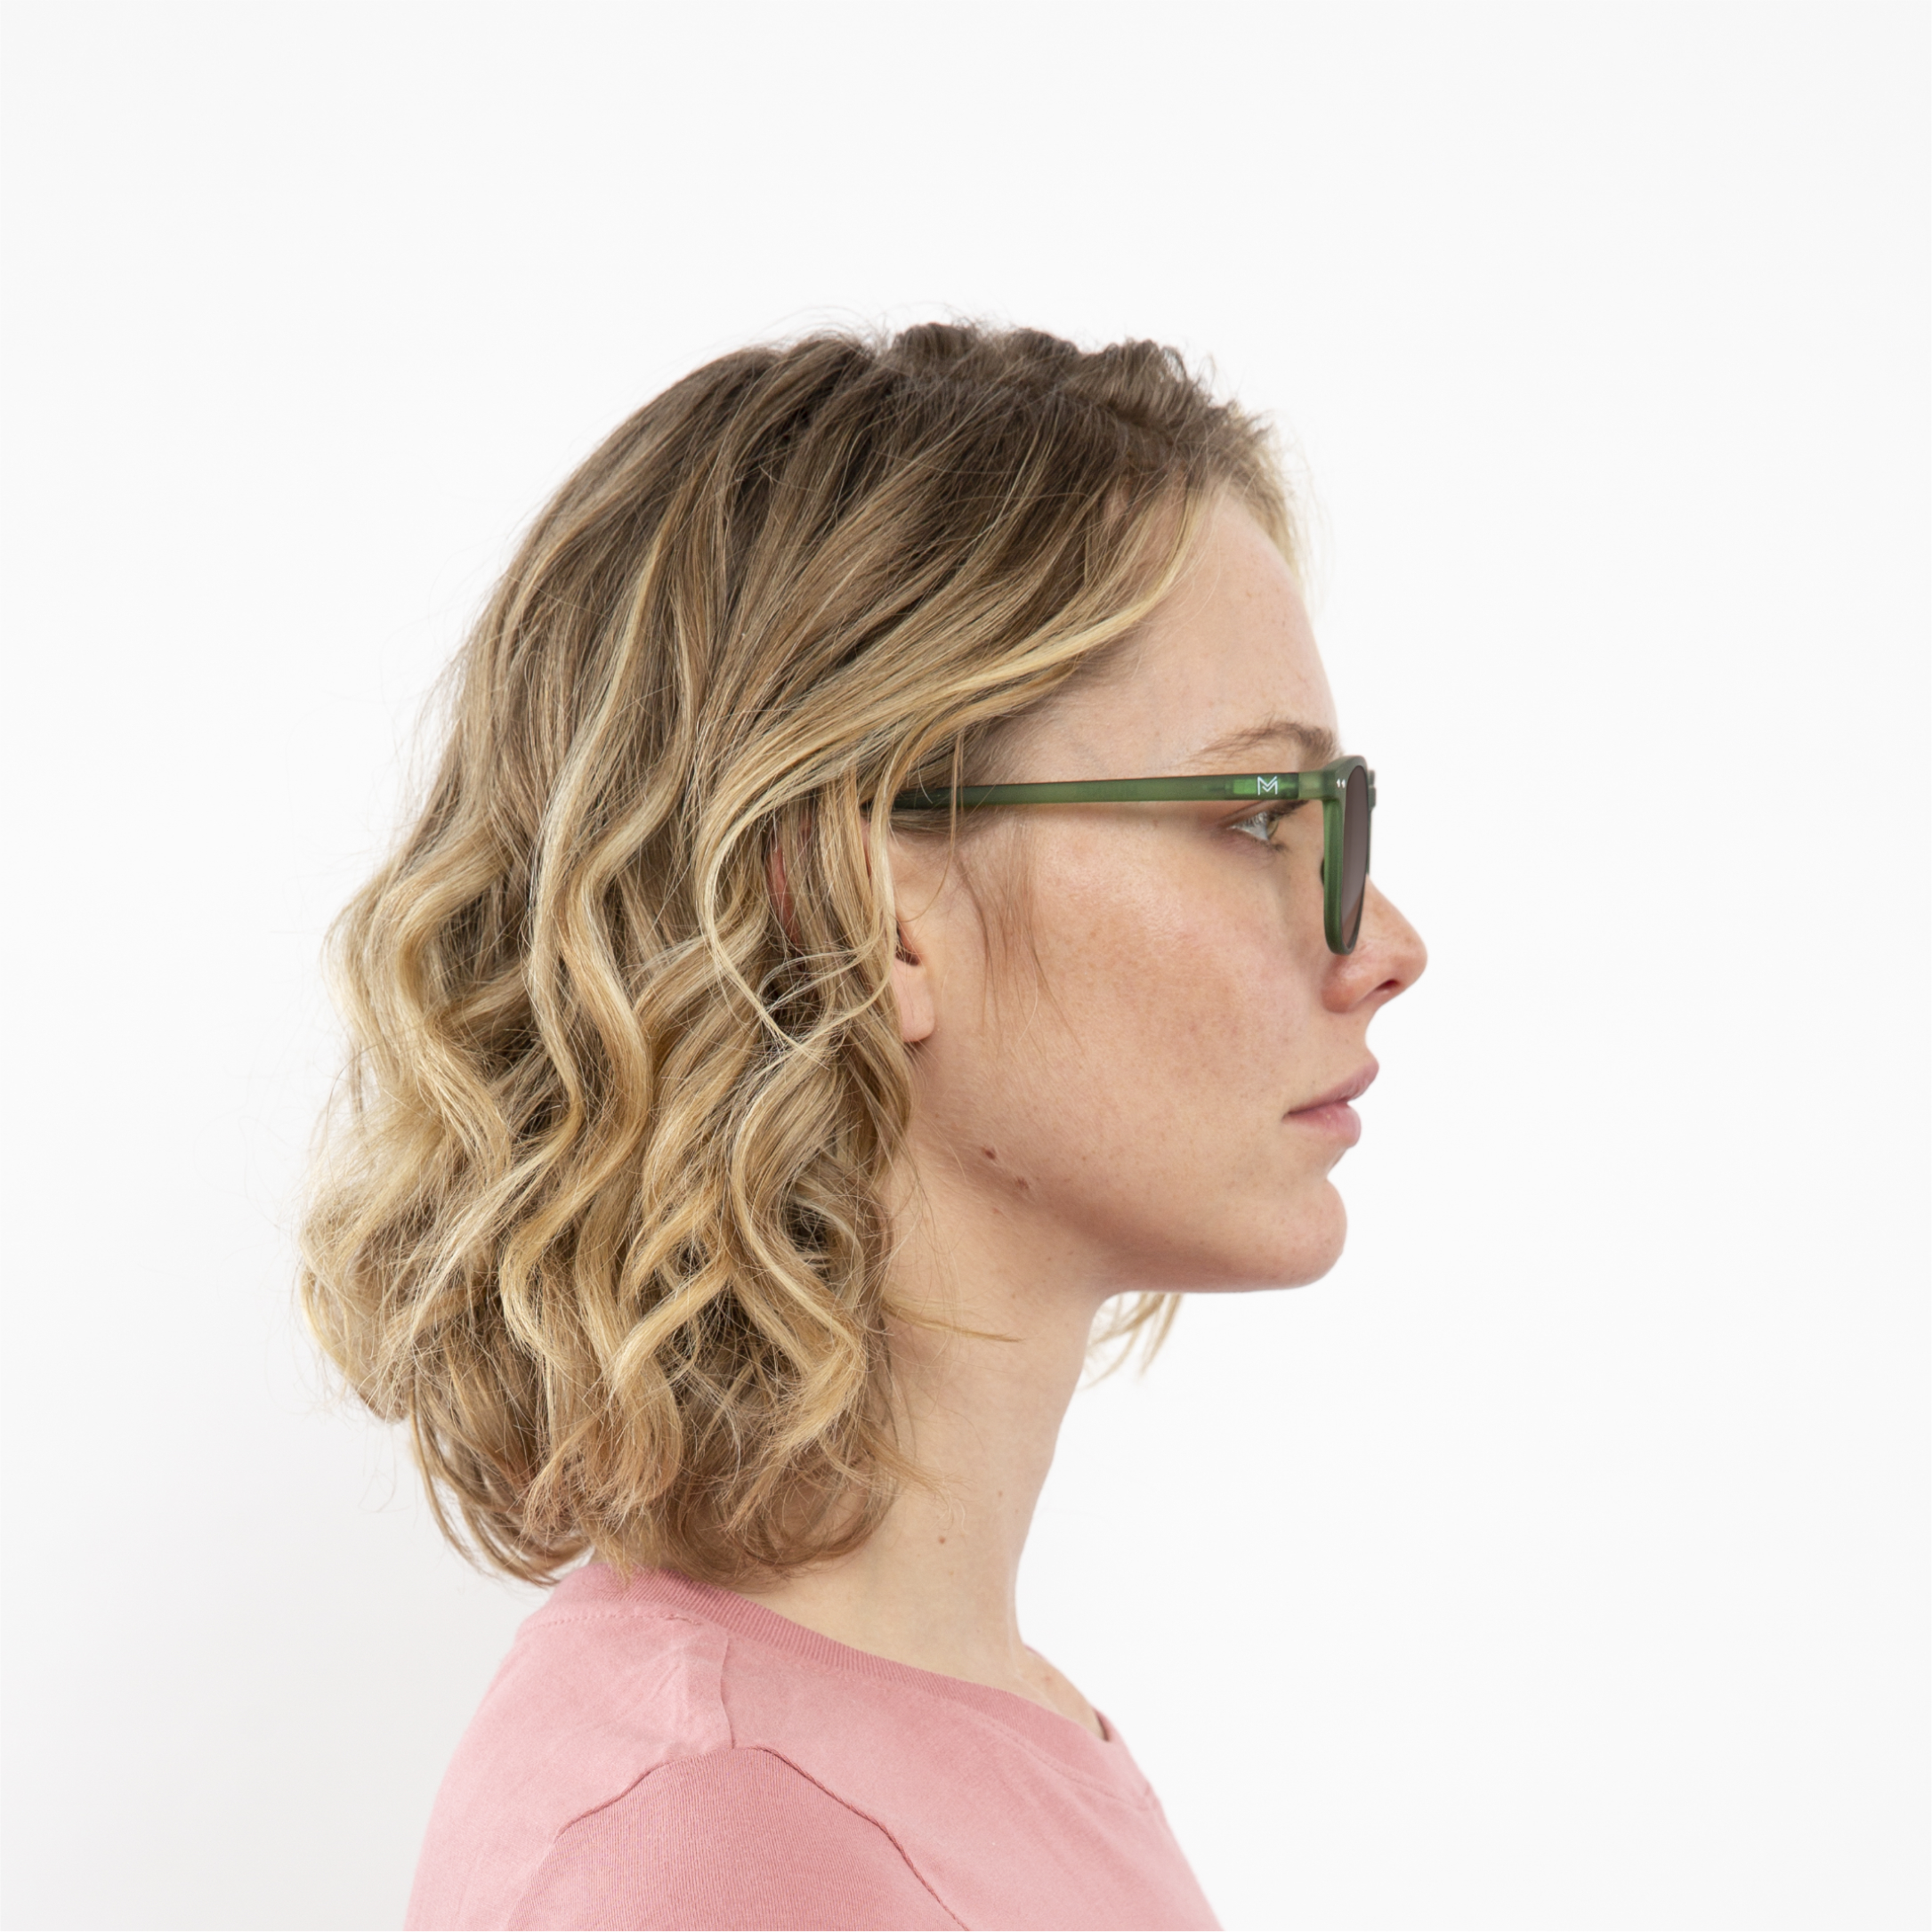 transition-photochromic-glasses-brown-lenses-women-william-green-profile